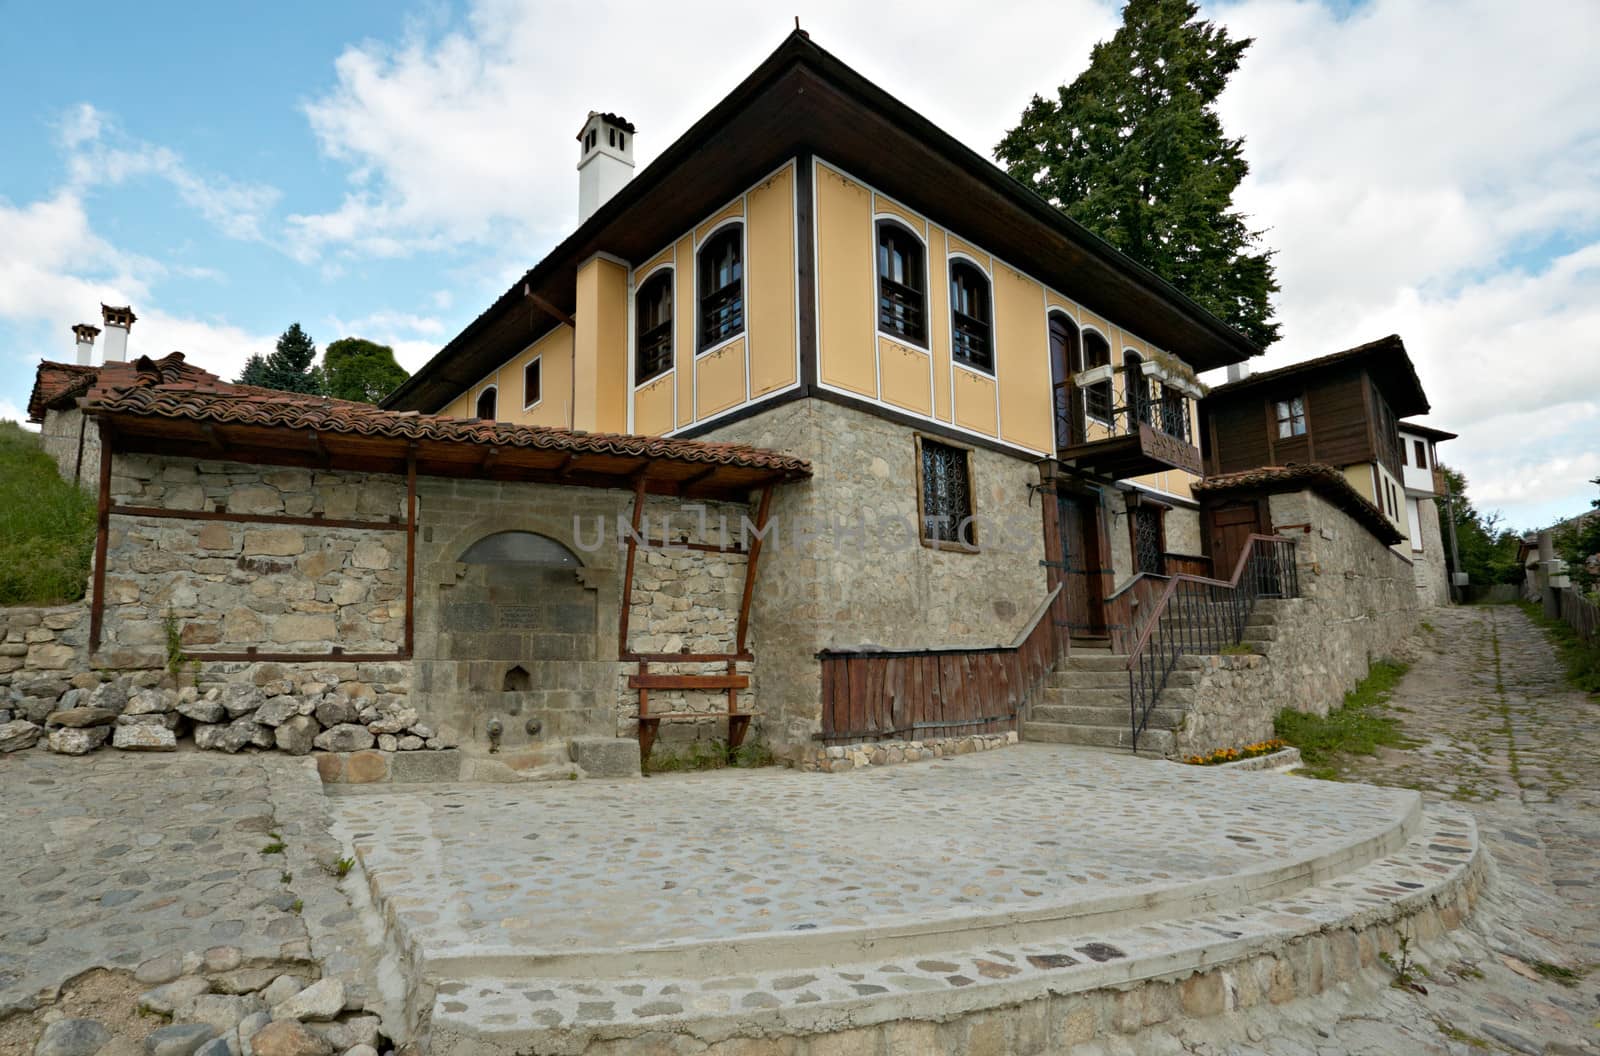 Koprivshtitsa architecture by ecobo